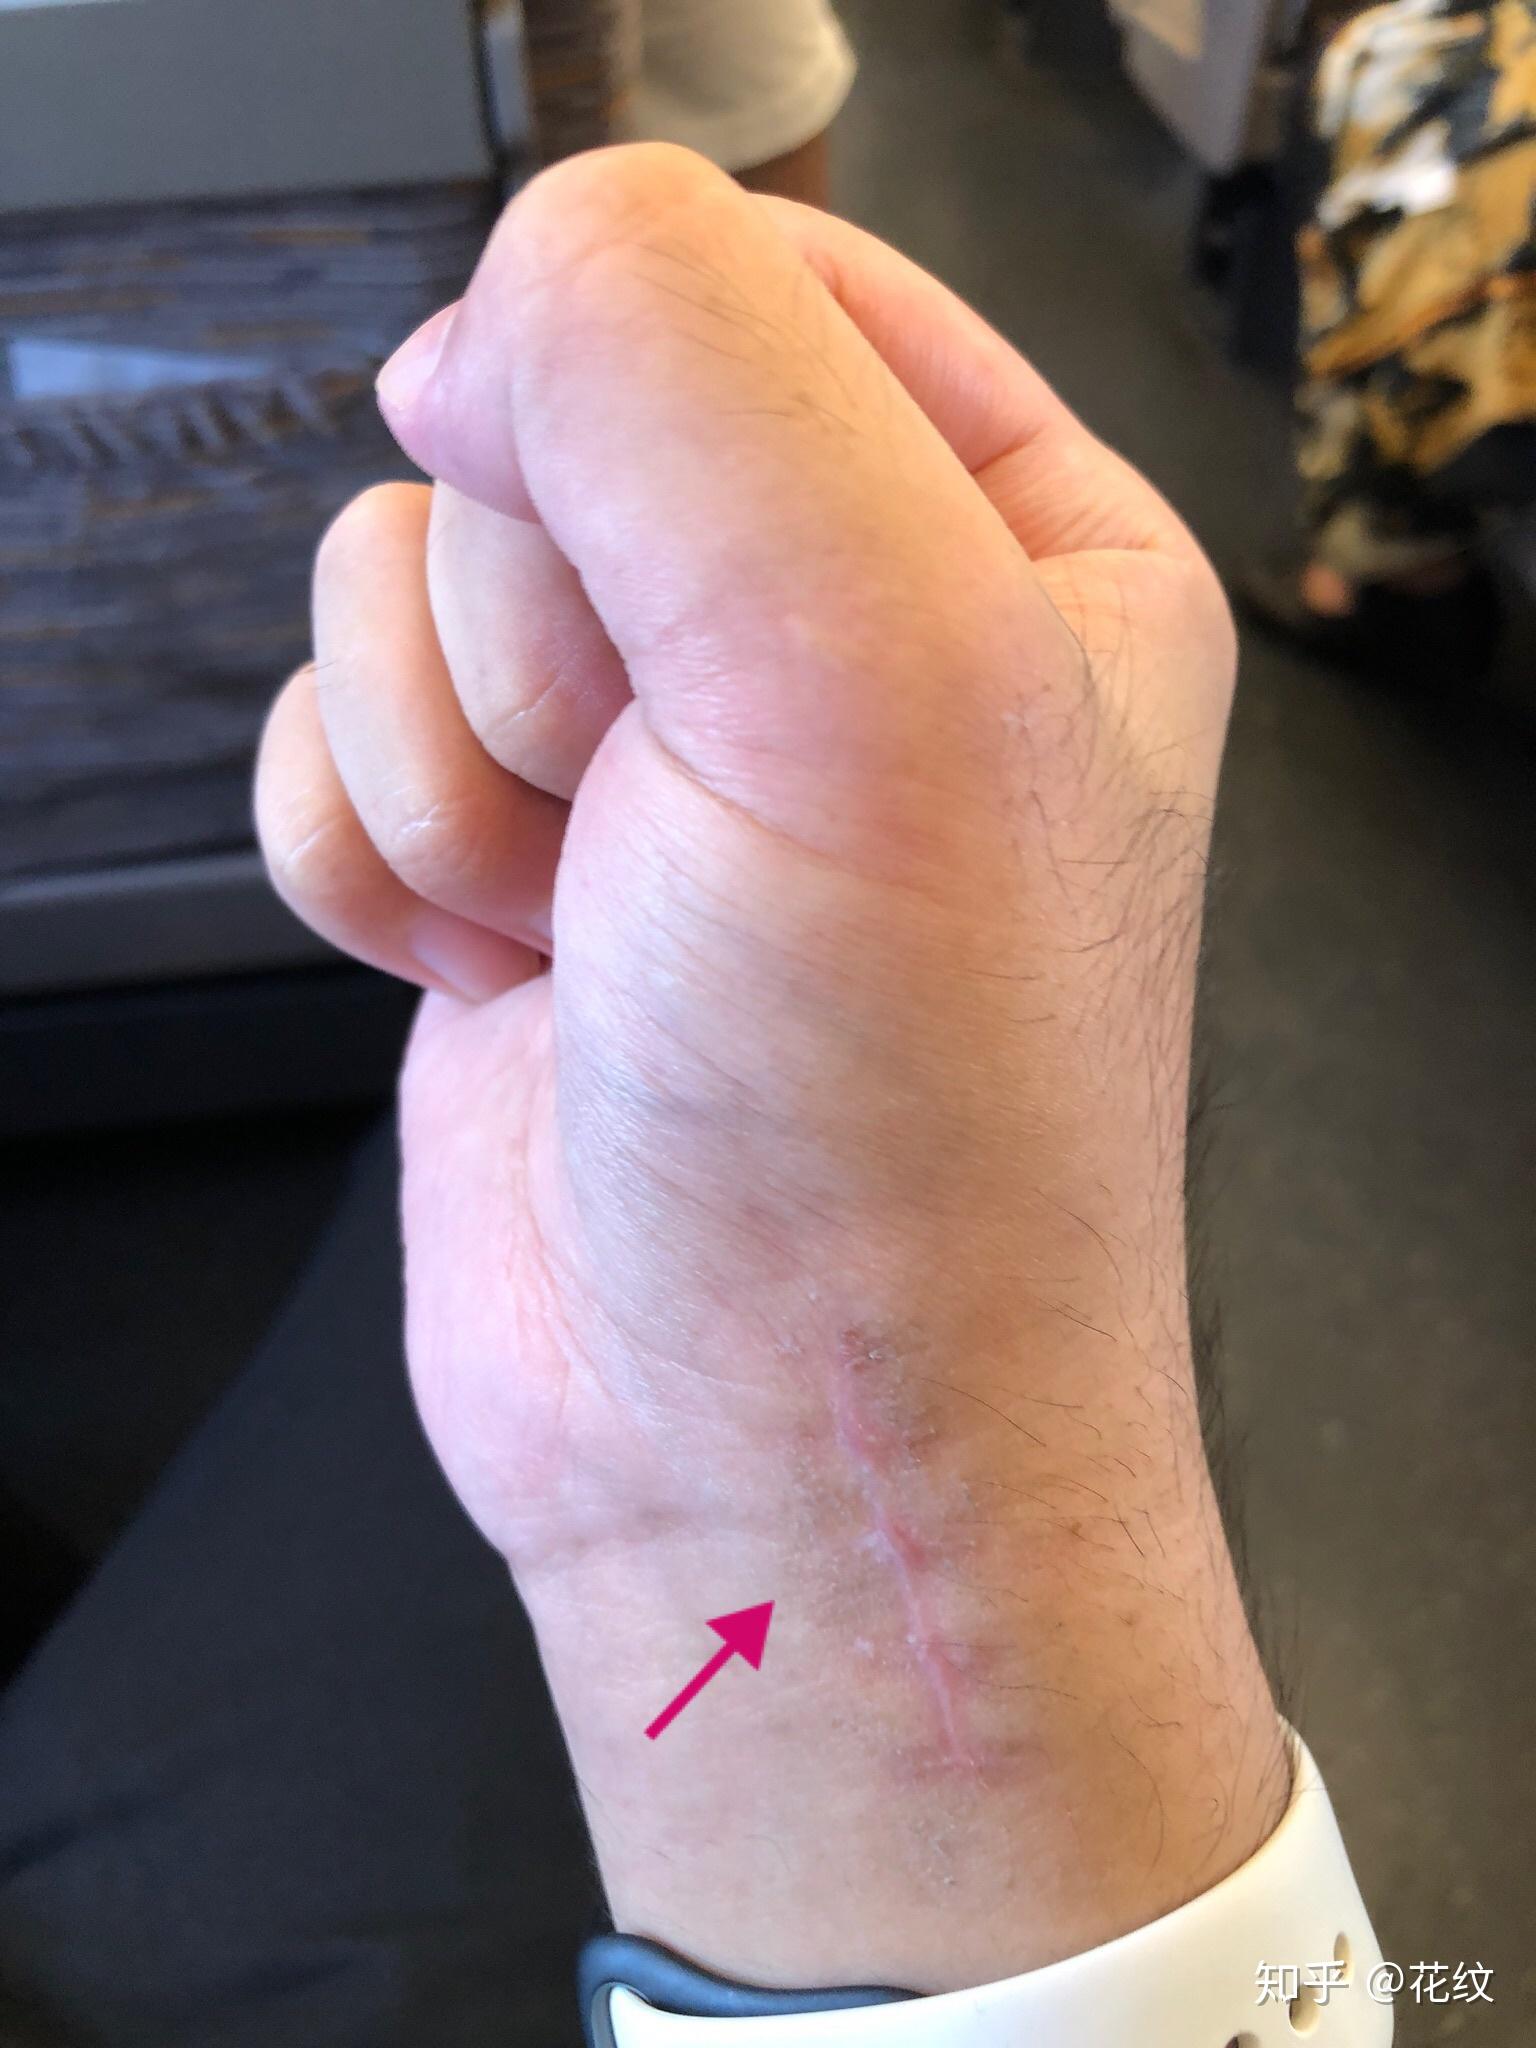 10月13日:手可以用力握拳,大拇手指剧烈活动根部有点疼,手腕有限位